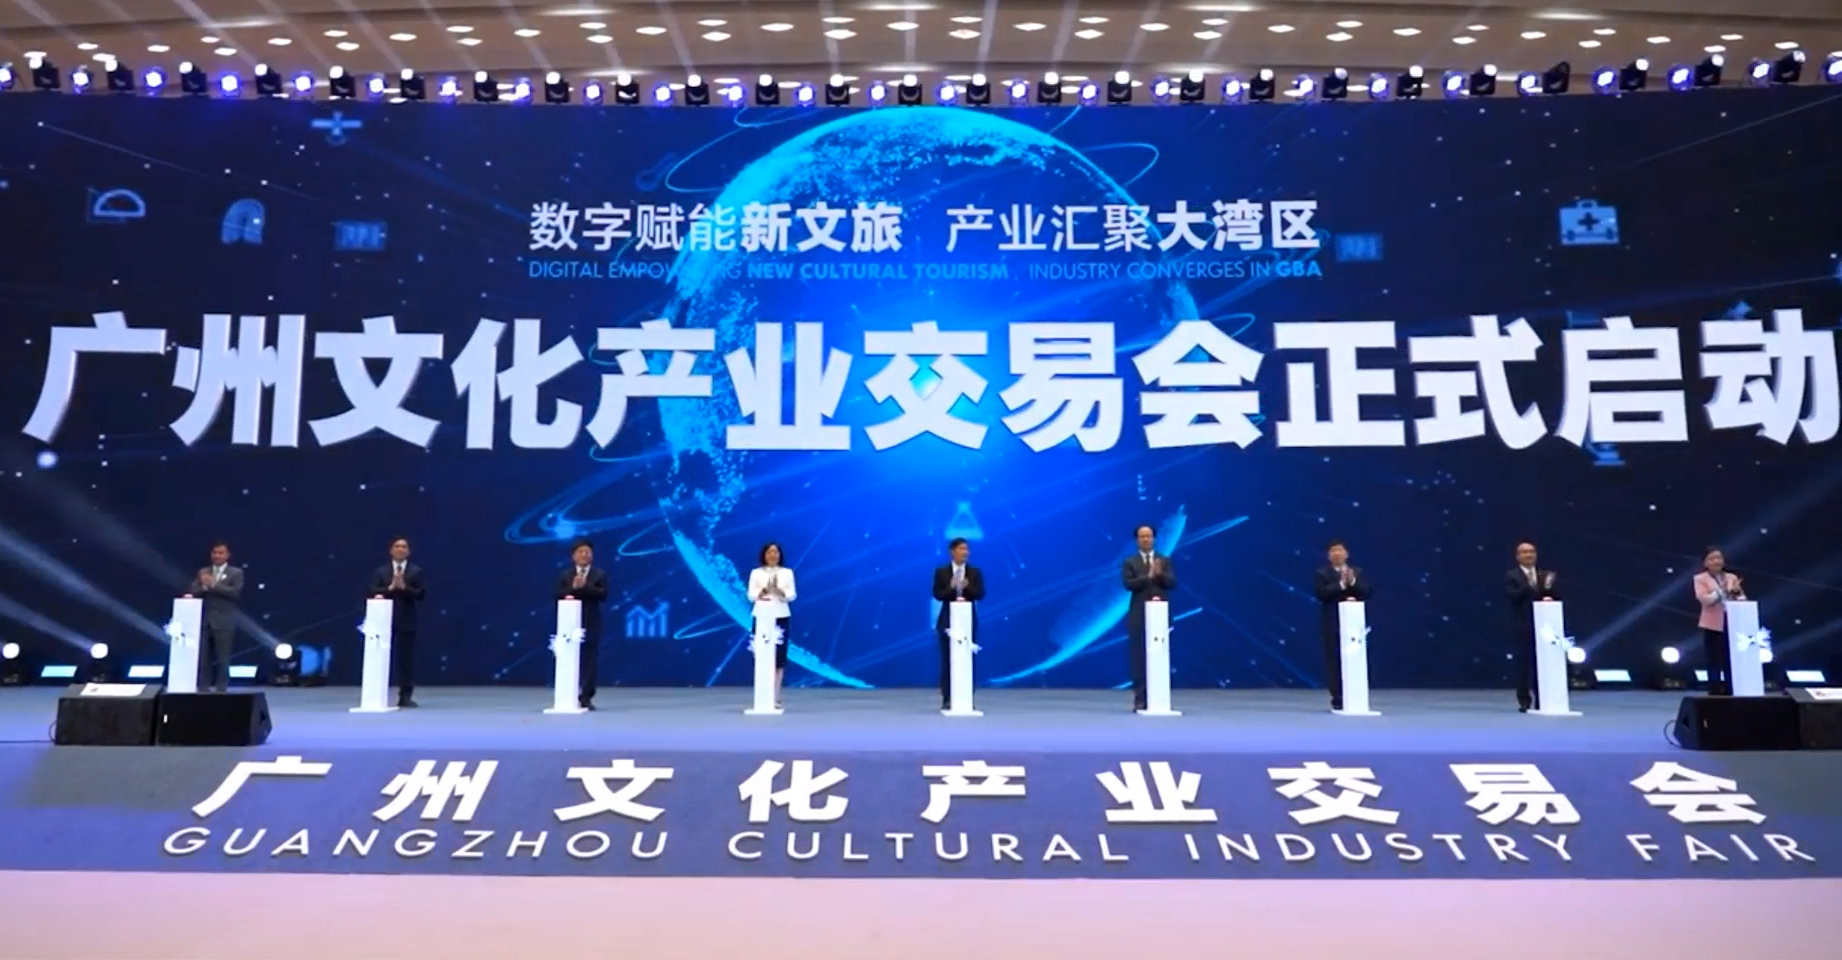 Guangzhou Cultural Industry Fair